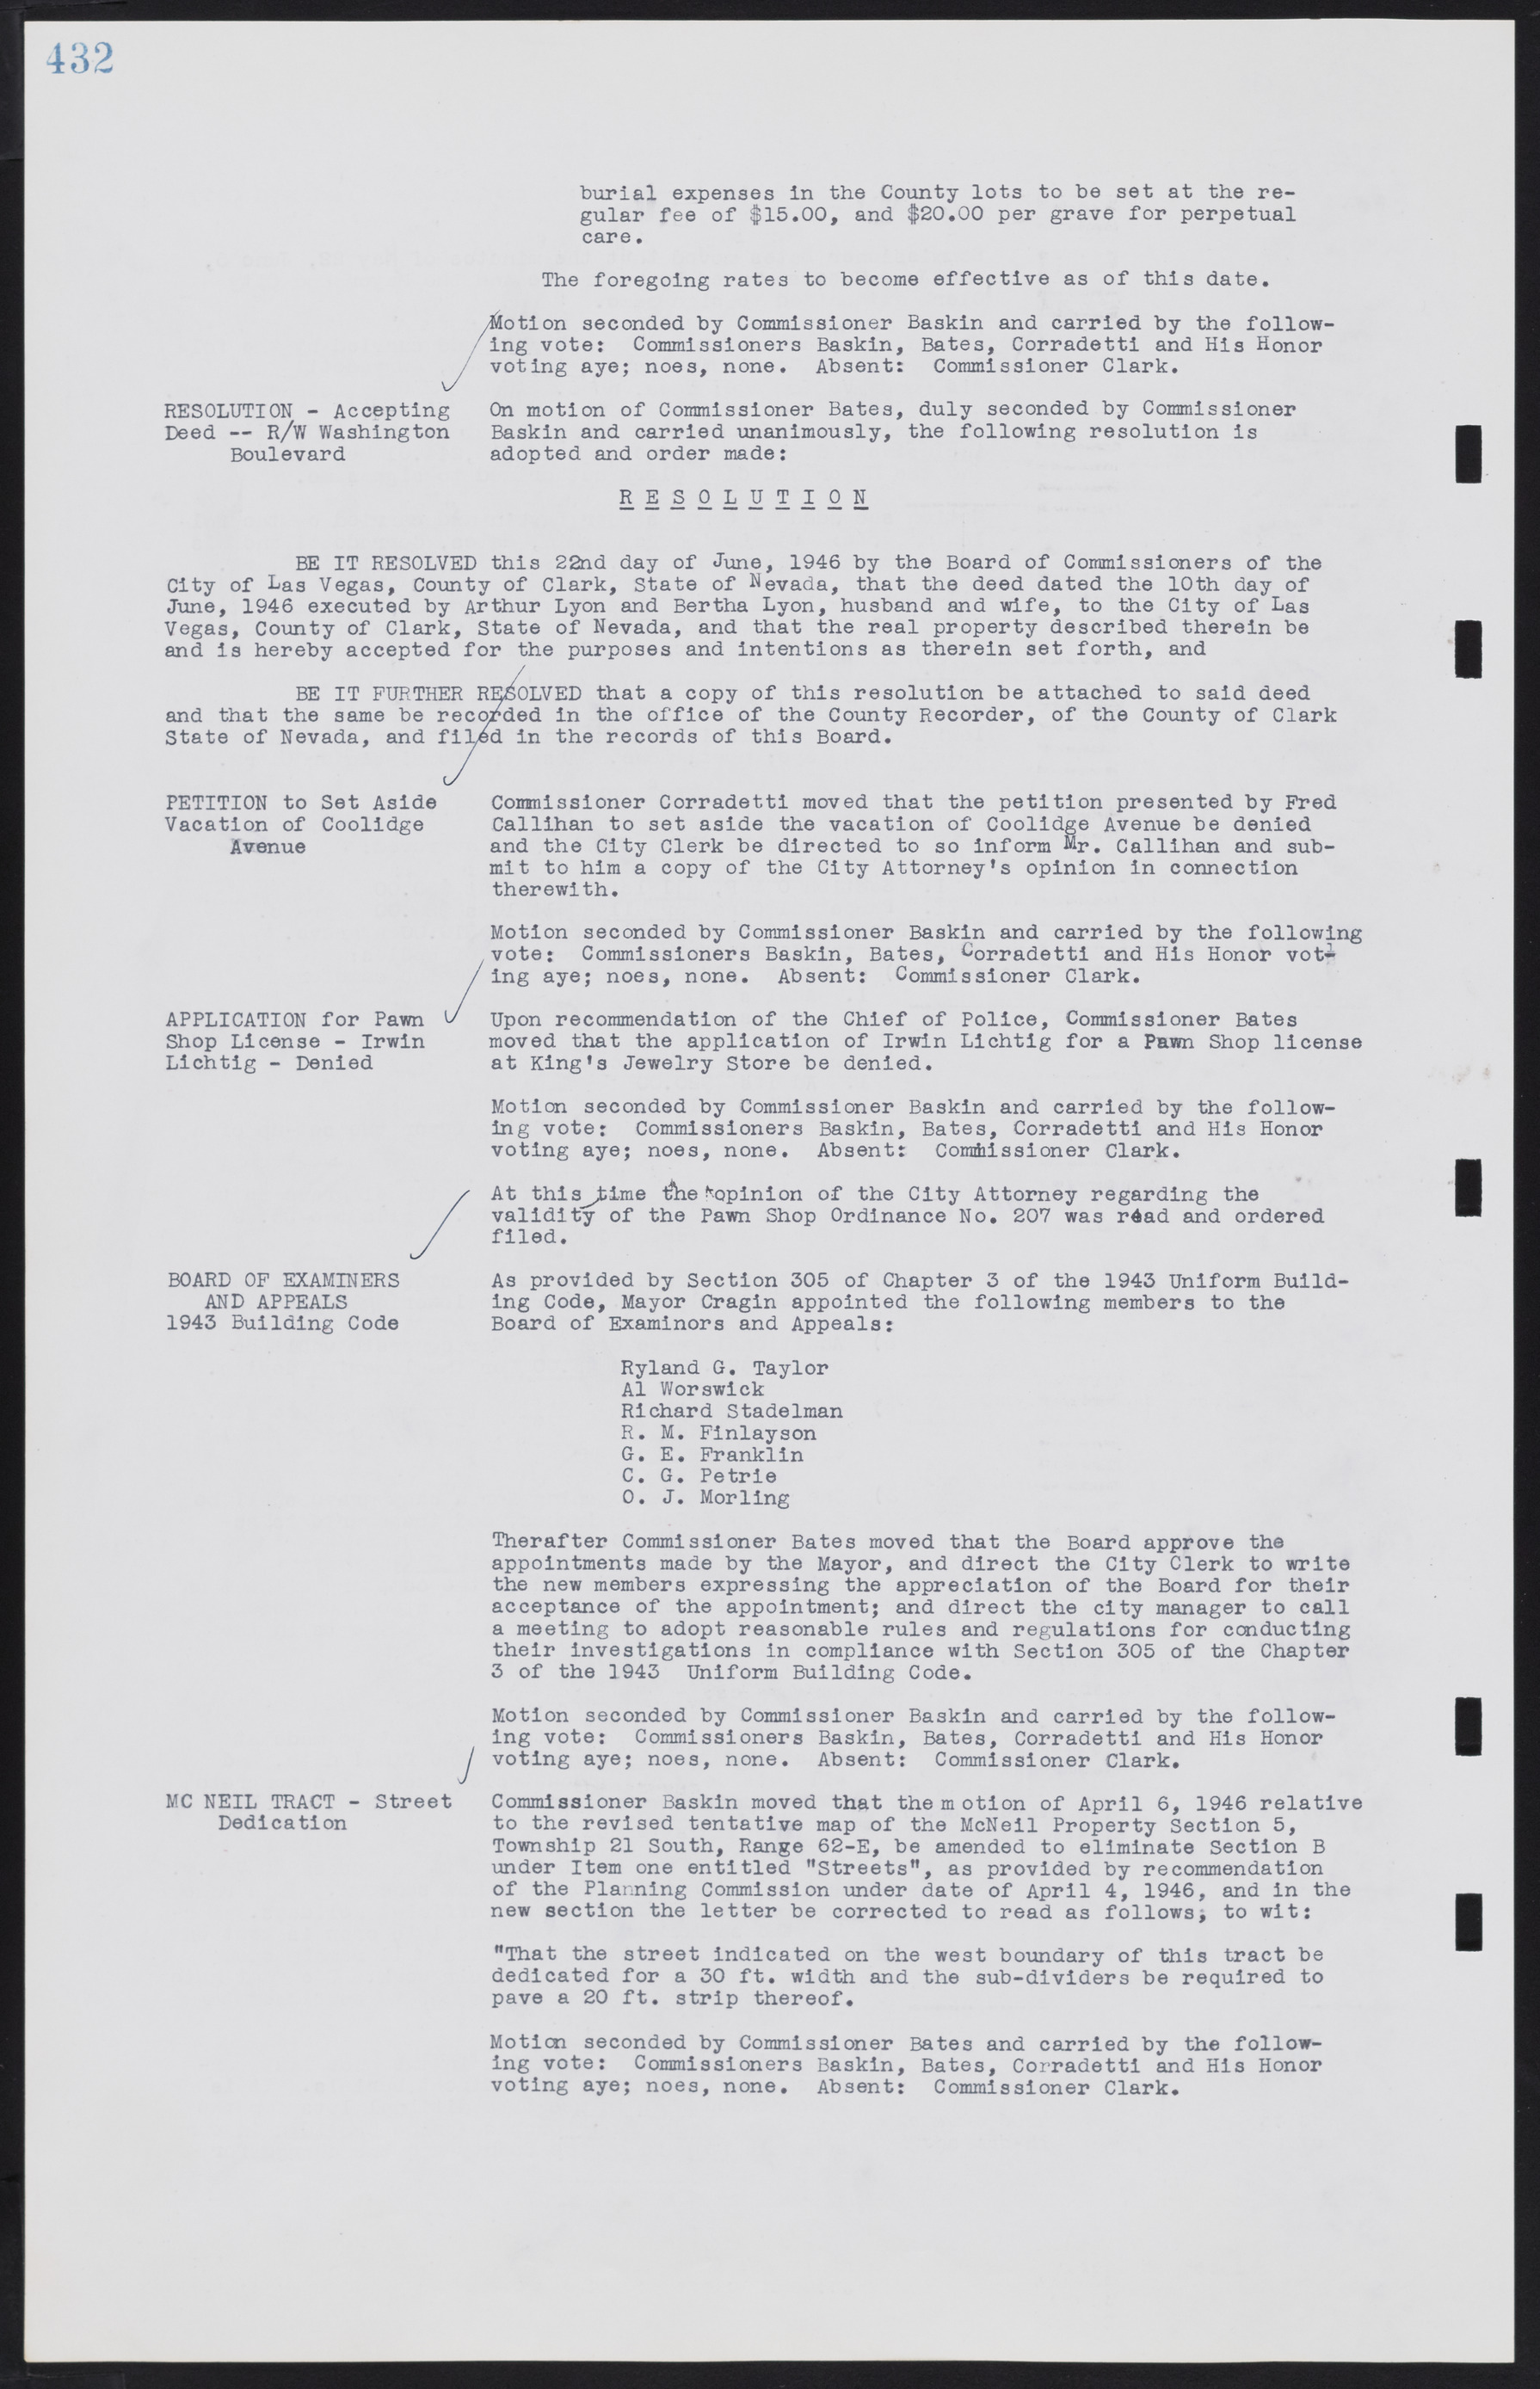 Las Vegas City Commission Minutes, August 11, 1942 to December 30, 1946, lvc000005-460